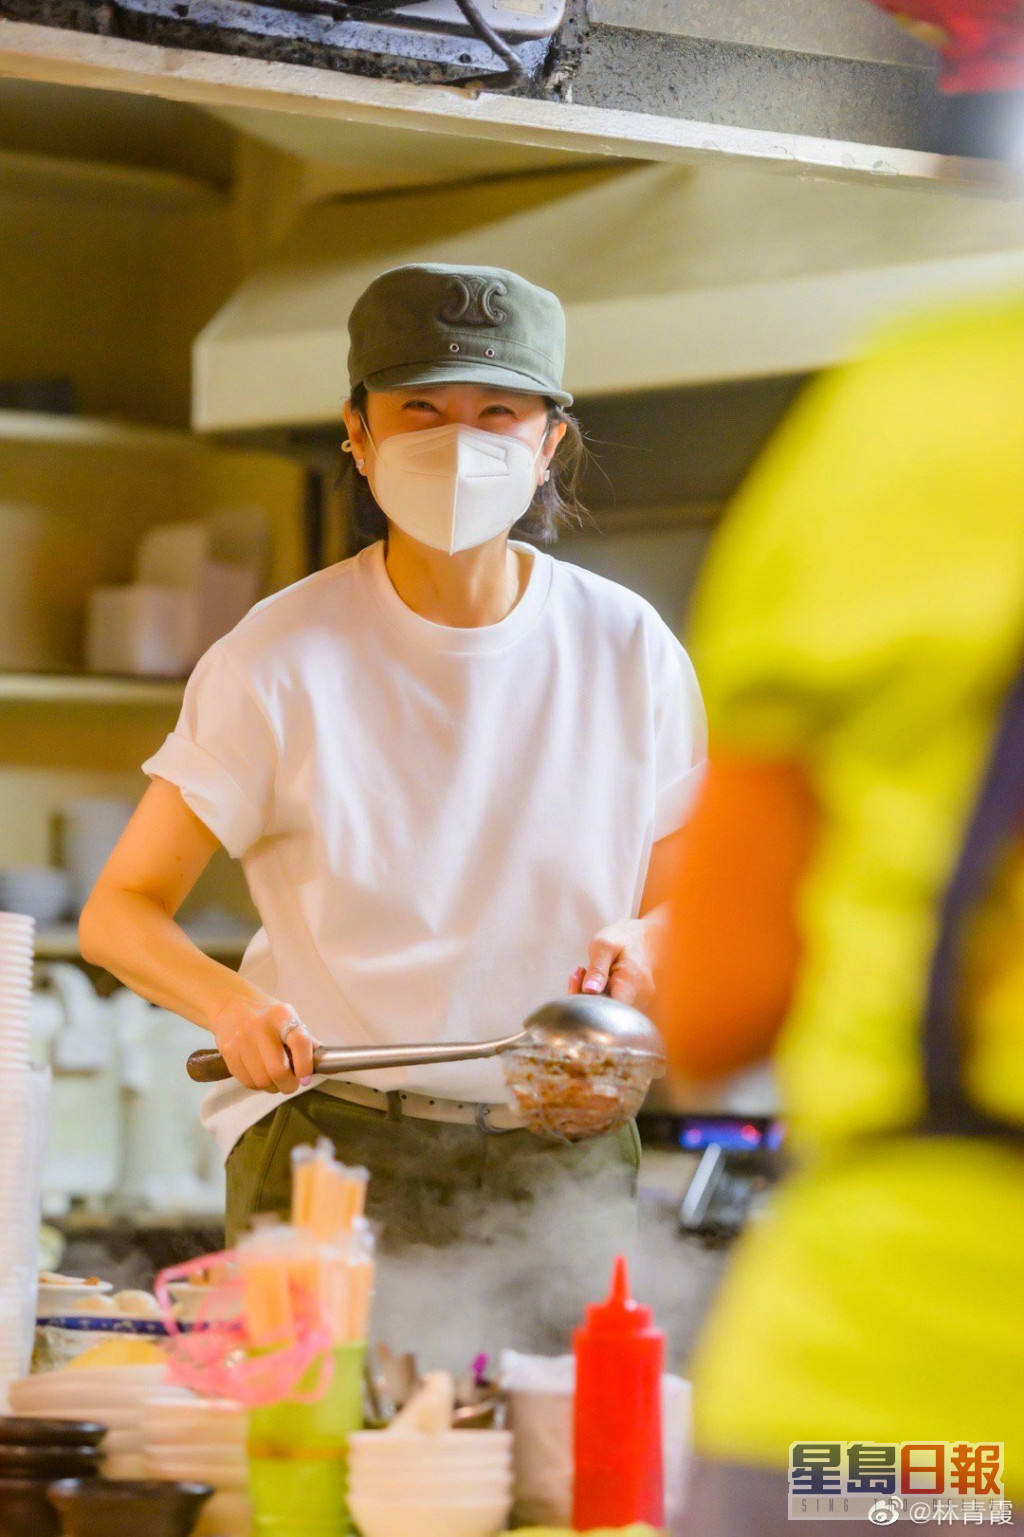 林青霞在微博分享了多张煮面照片。